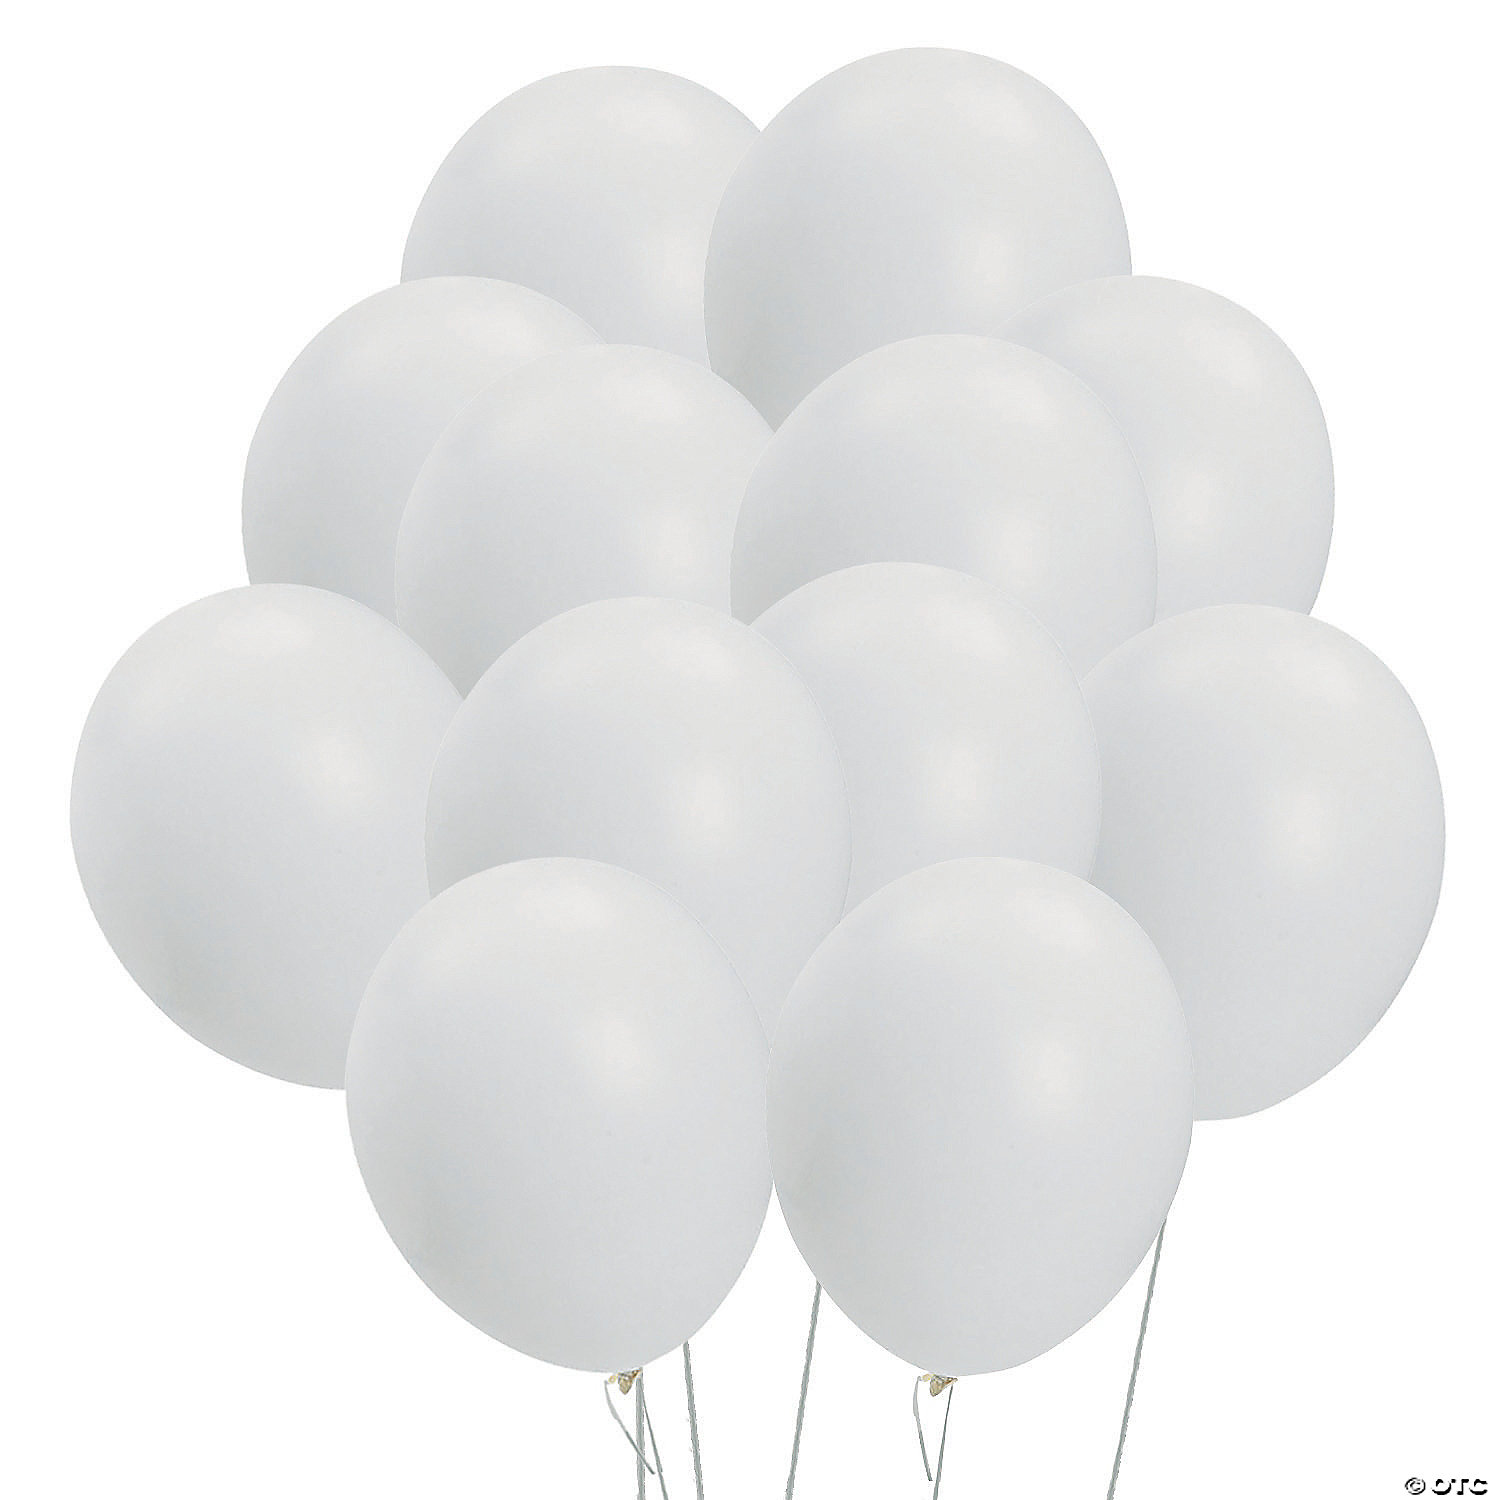 50 x 12" Metallic White Balloons Party Birthday Wedding Celebration Decorations 